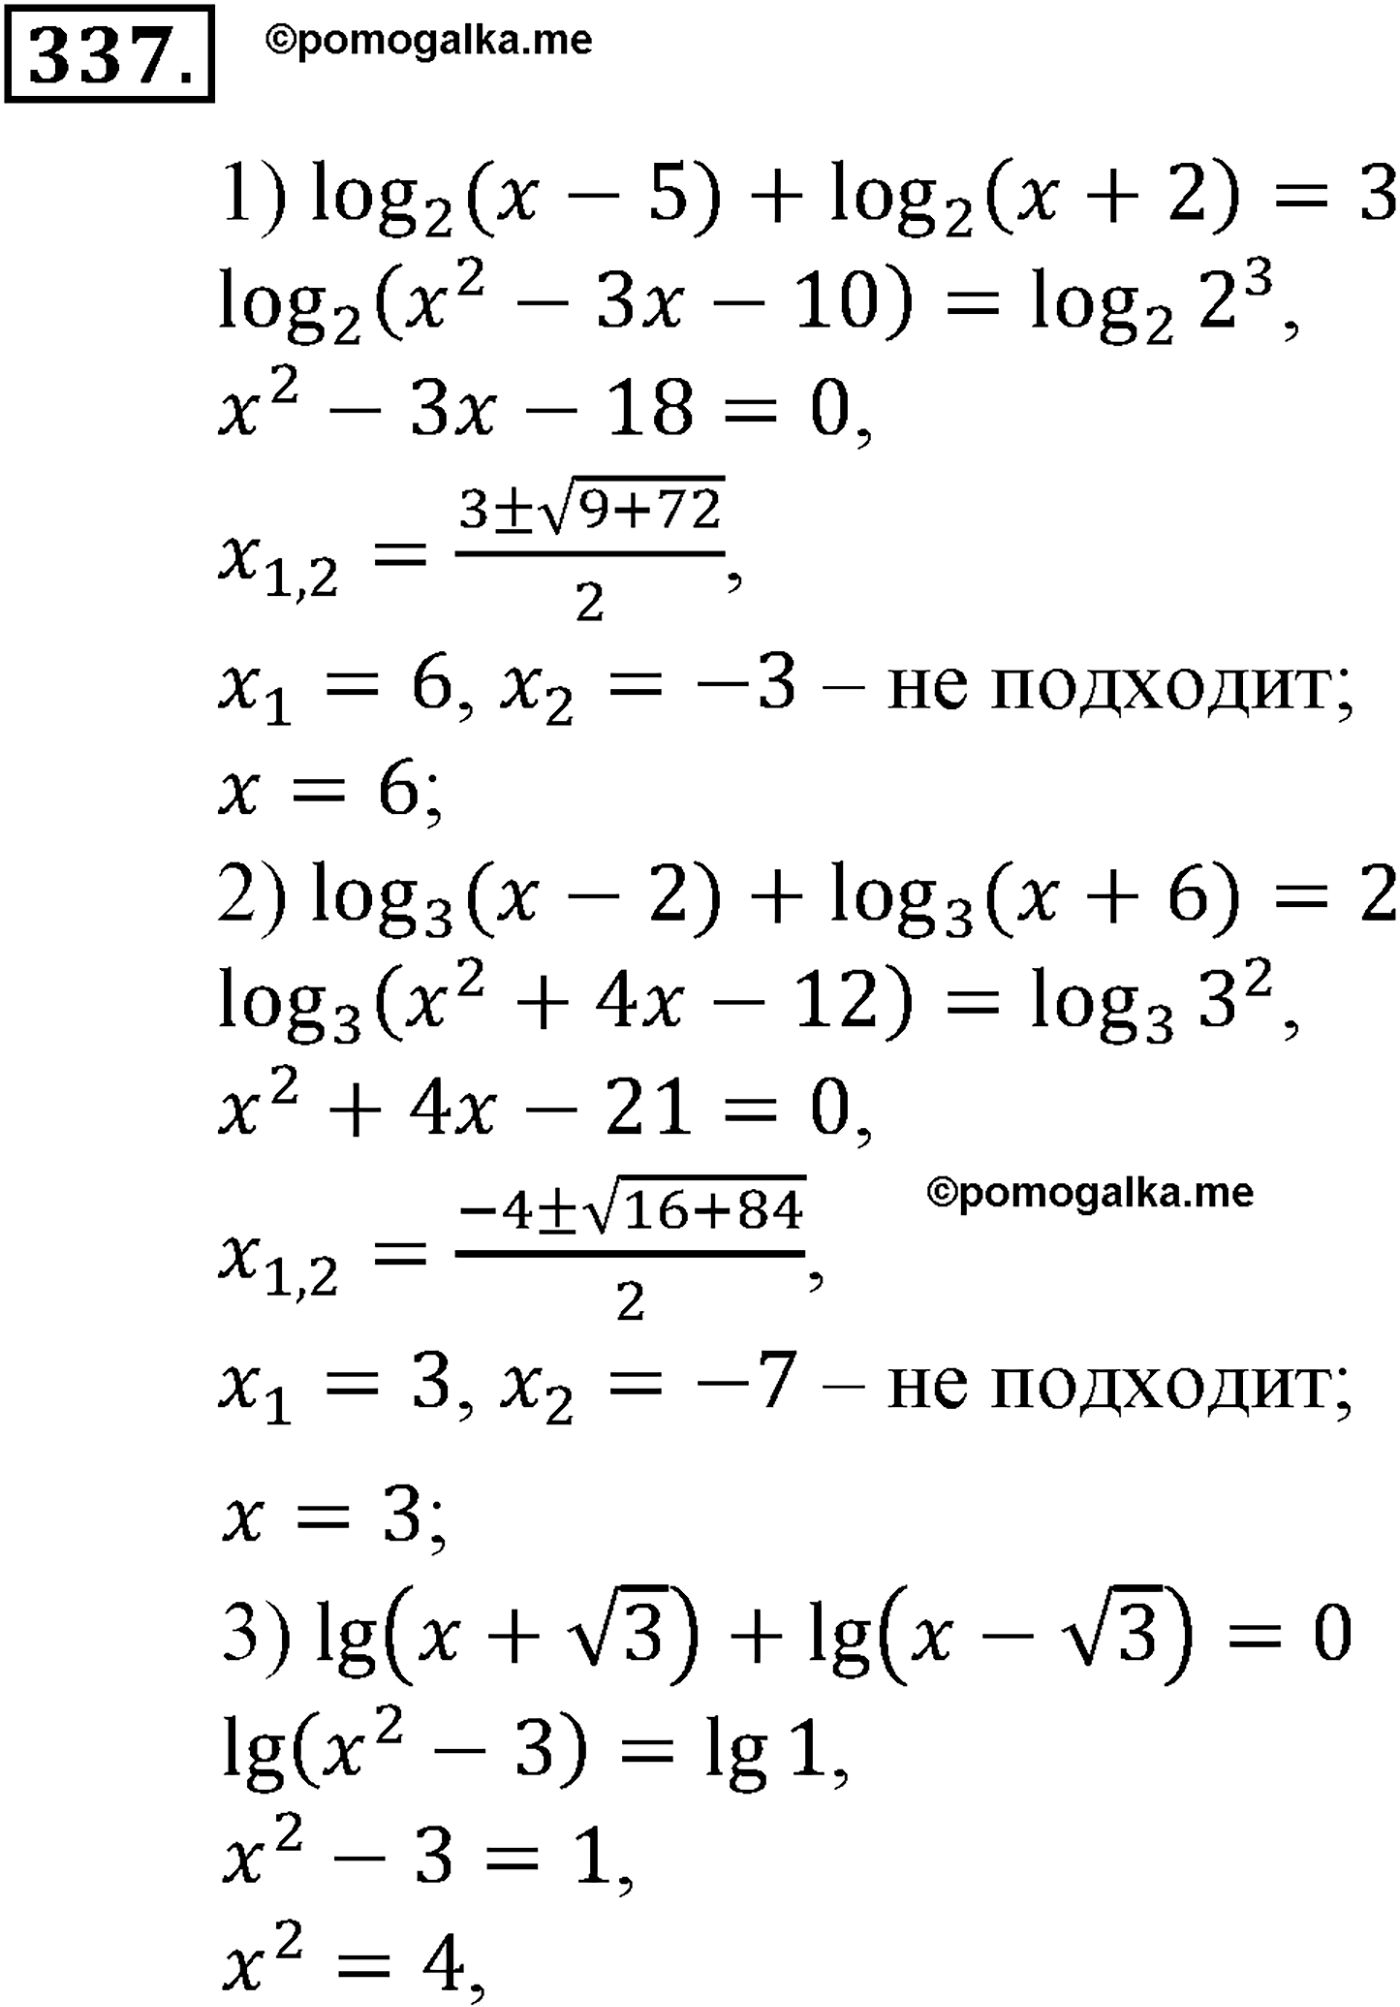 разбор задачи №337 по алгебре за 10-11 класс из учебника Алимова, Колягина